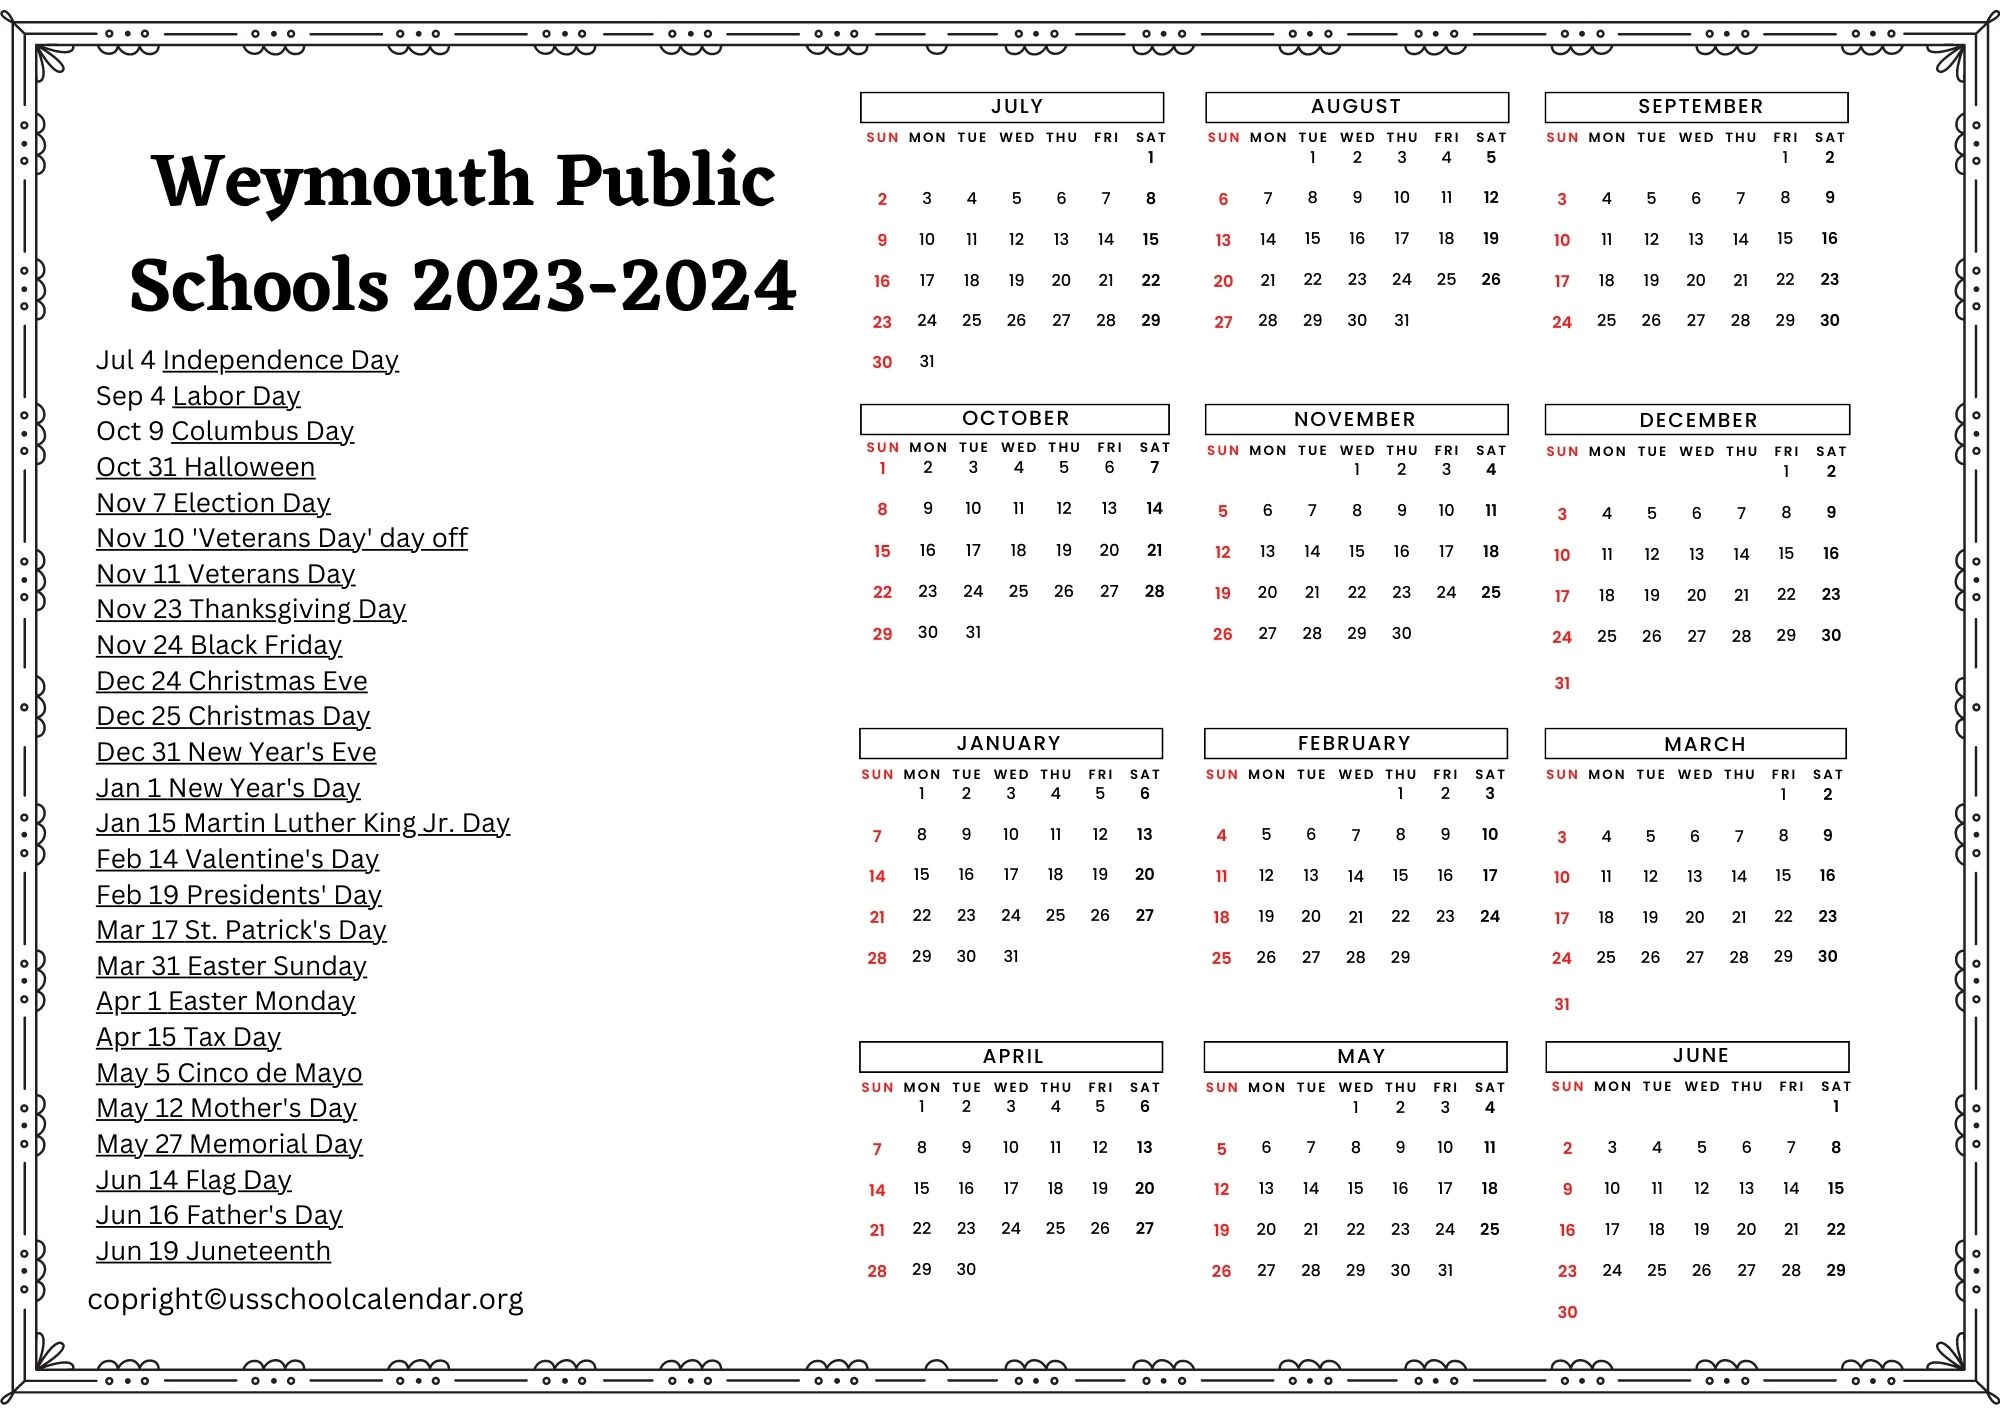 Weymouth Public Schools Calendar with Holidays 20232024